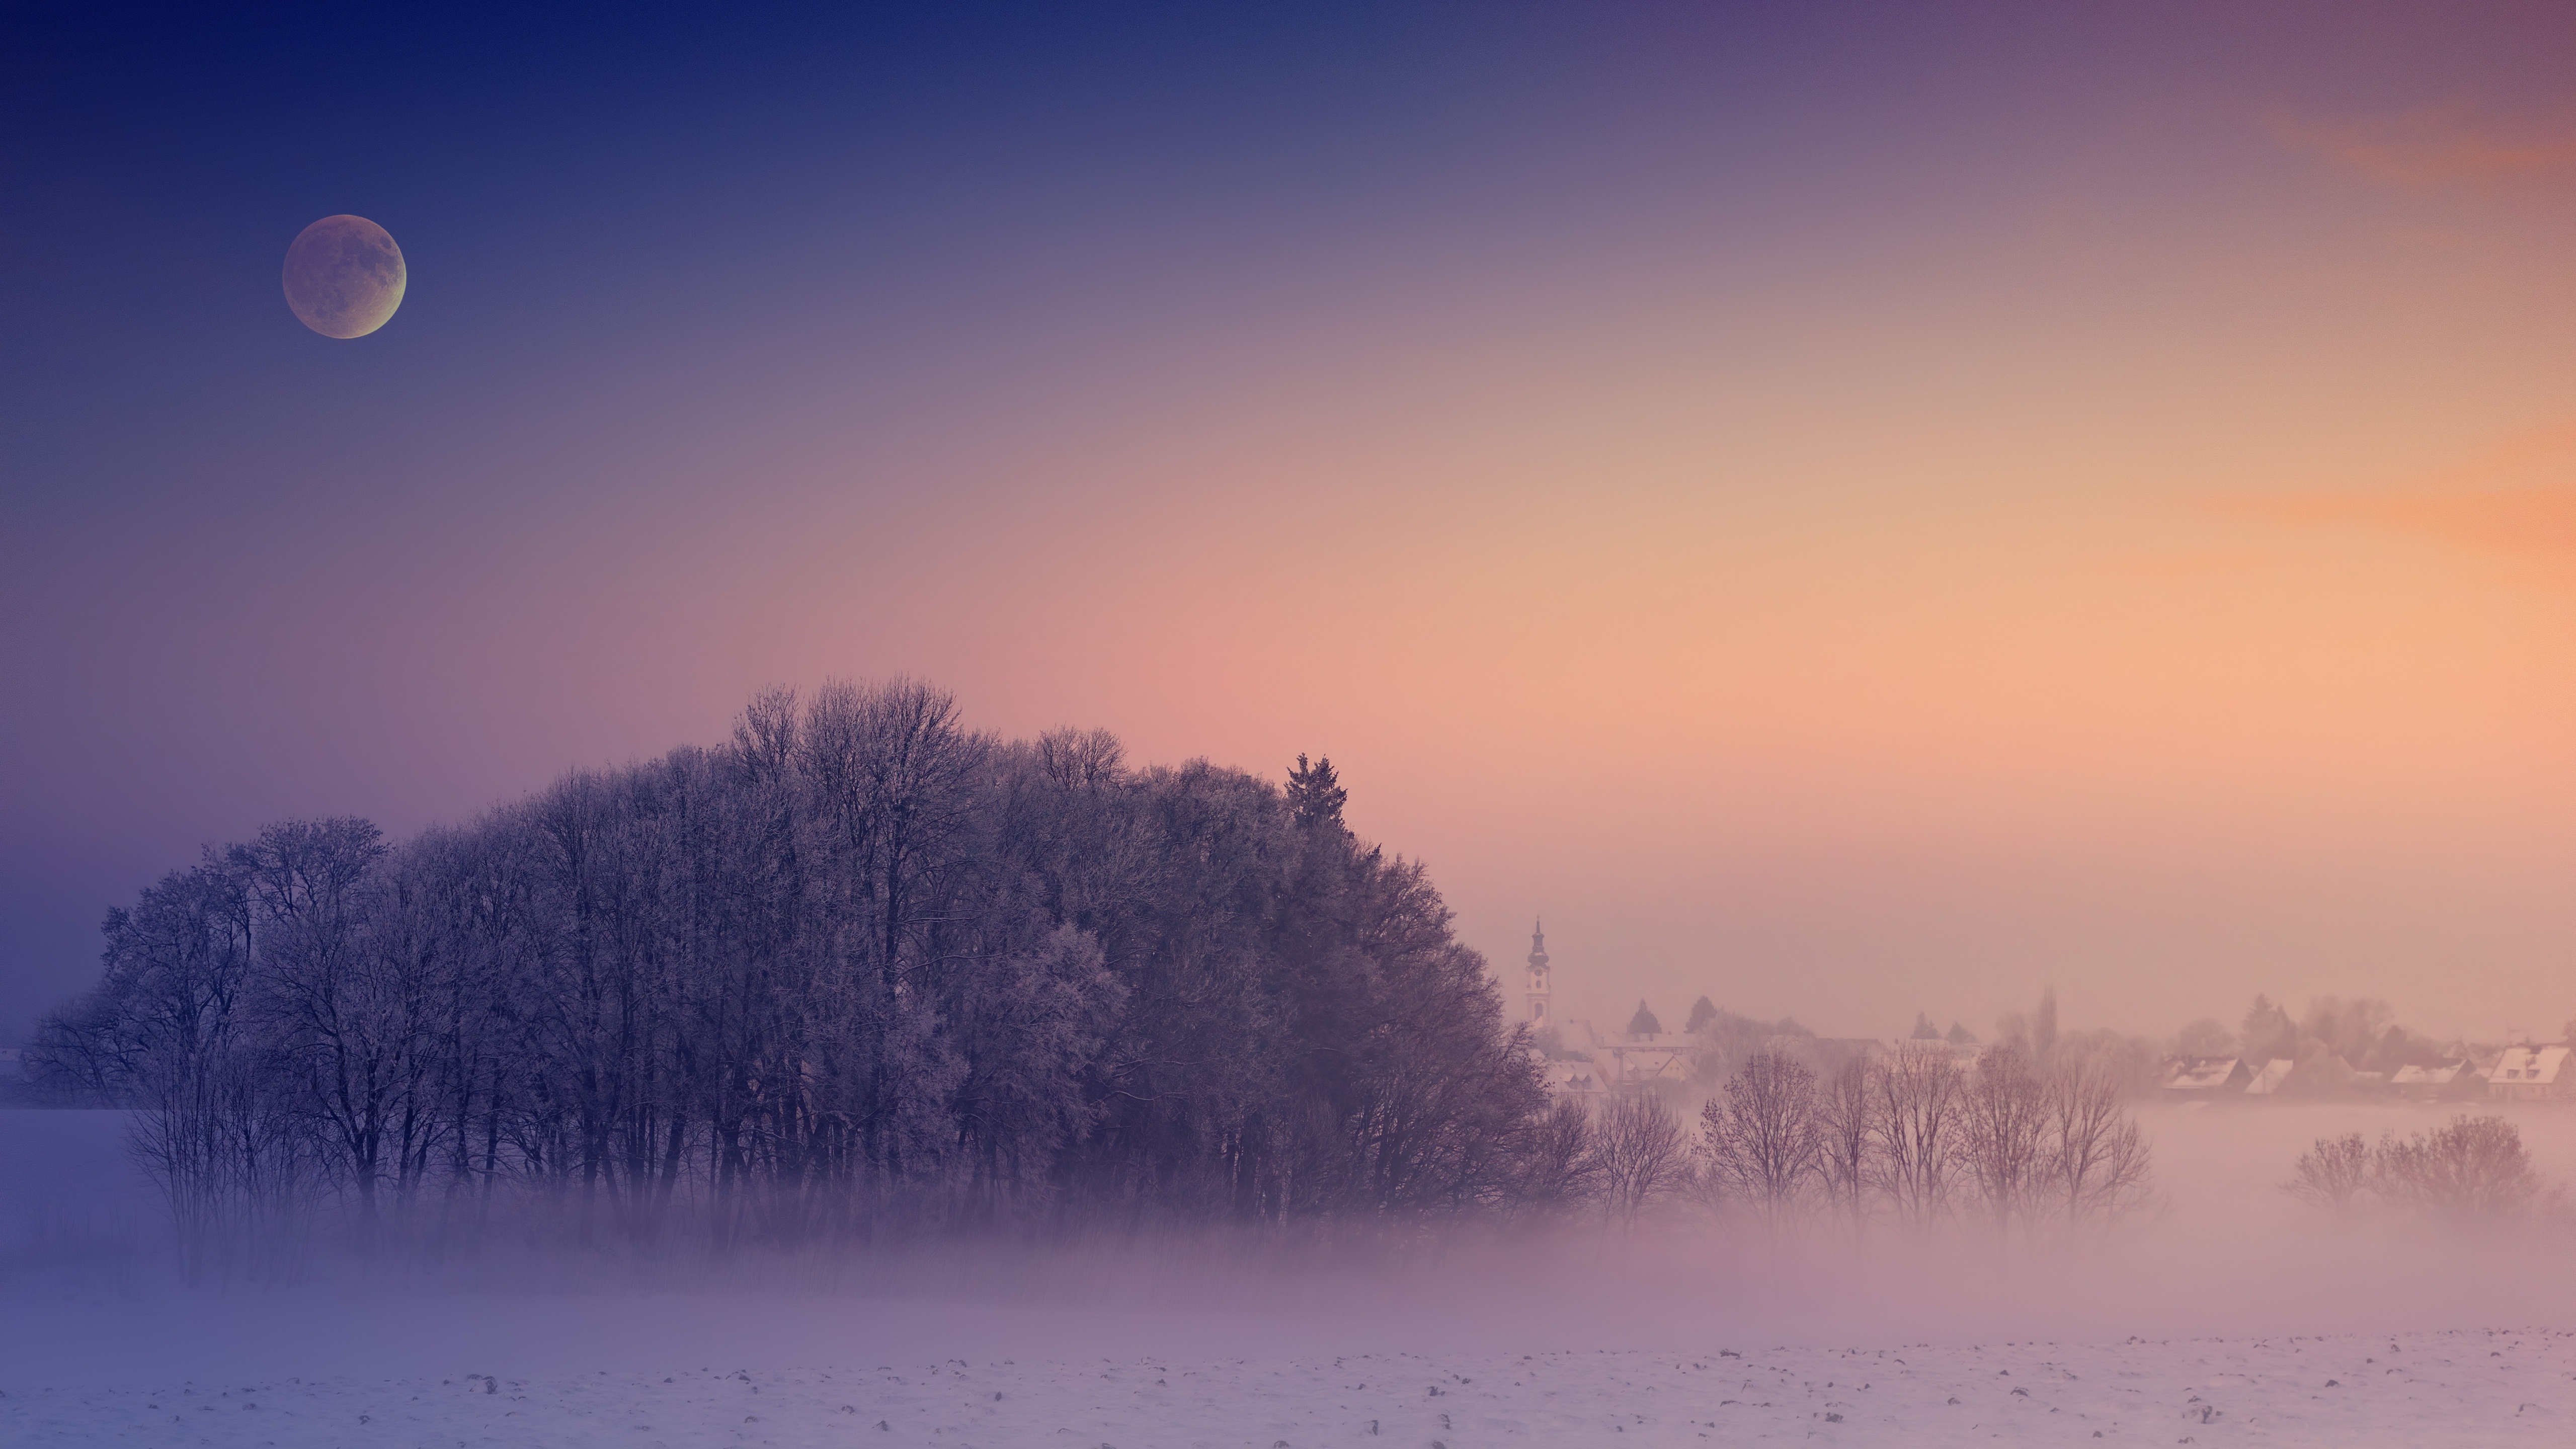 Hãy truy cập ngay để khám phá những hình nền đẹp về mùa đông và thiên nhiên hoang dã! Với các bức ảnh chất lượng cao, bạn sẽ cảm nhận được sự độc đáo, hoang sơ của thiên nhiên trong mùa đông. Hãy truy cập ngay để có được bức hình nền mùa đông đẹp nhất!